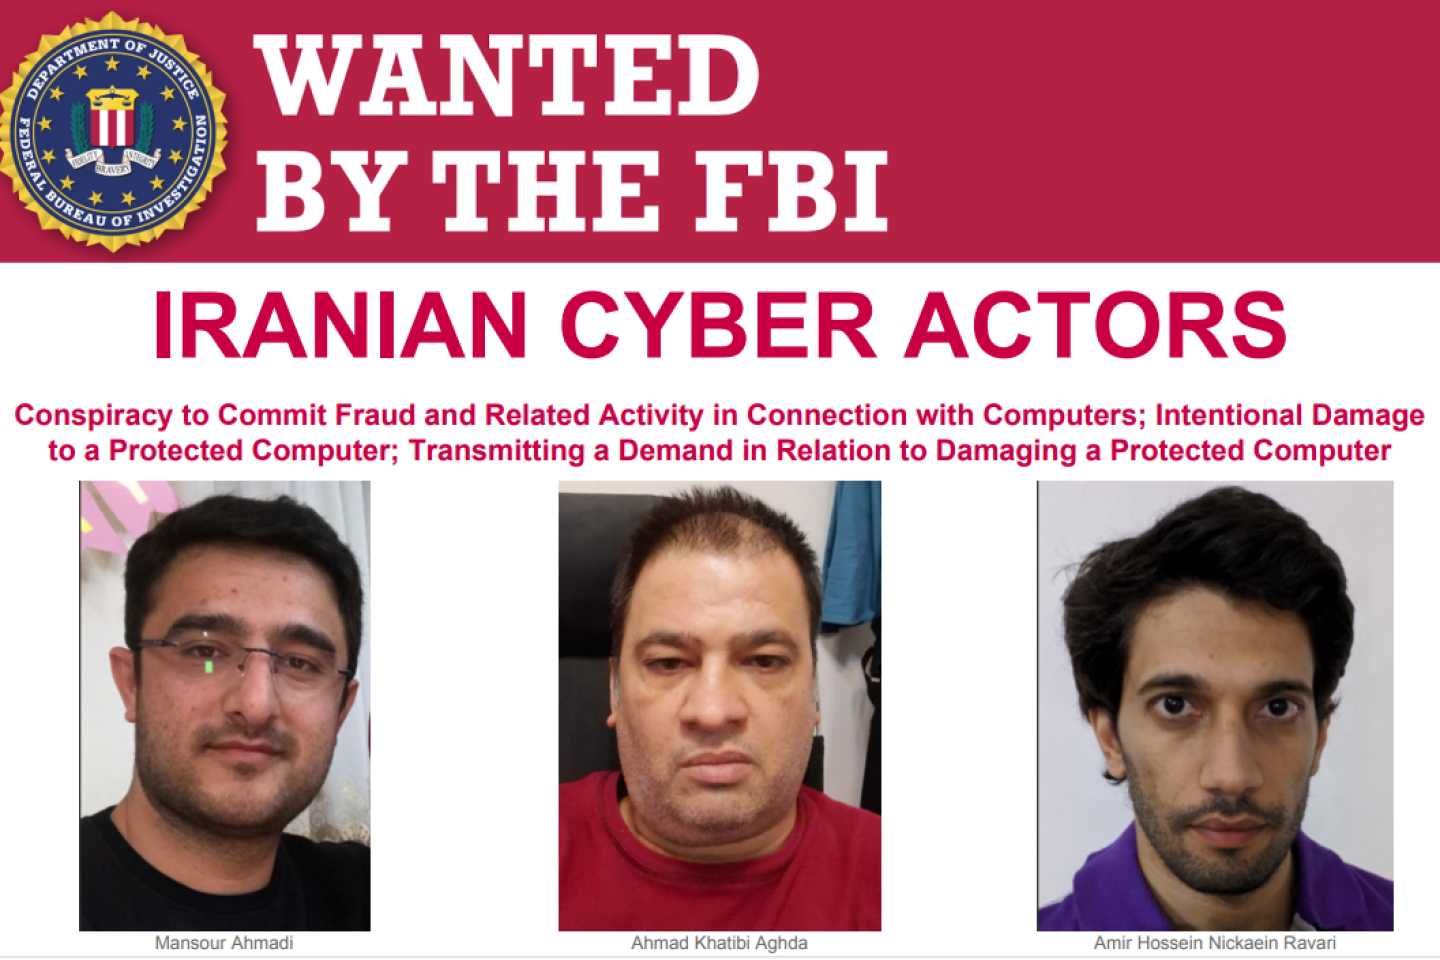 Les Etats-Unis inculpent et sanctionnent des pirates informatiques iraniens